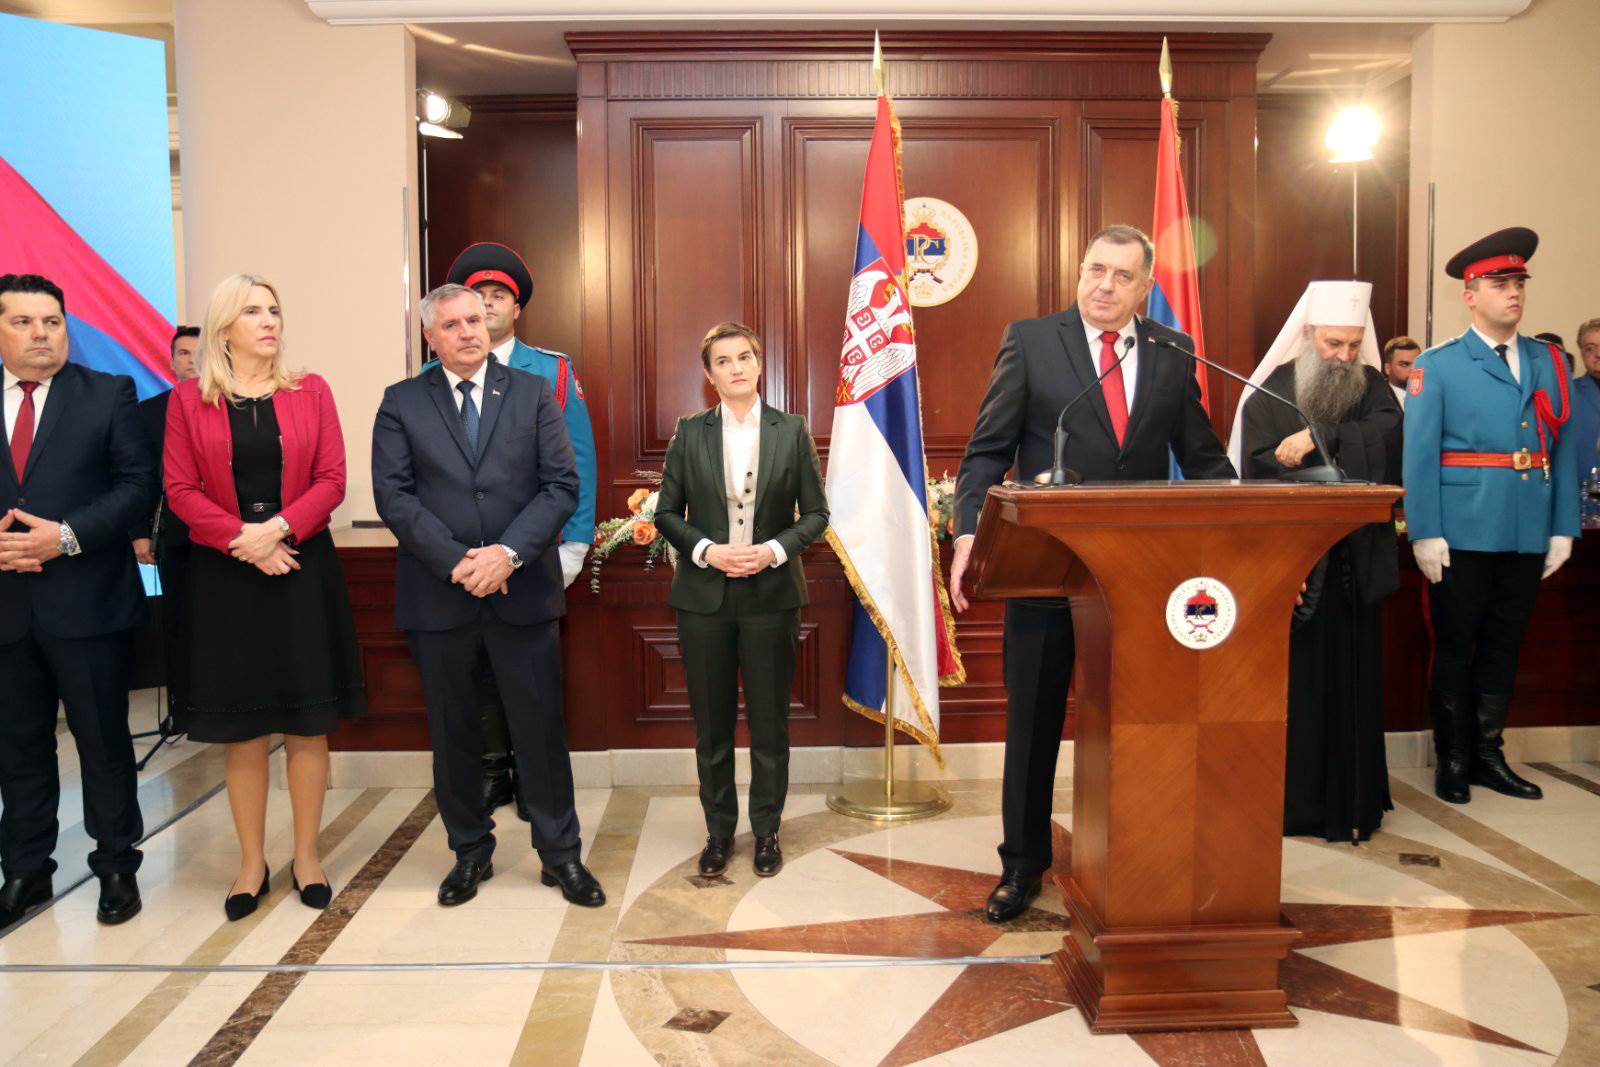  Održan svečani prijem kod Dodika povodon stupanja na dužnost predsjednika RS 